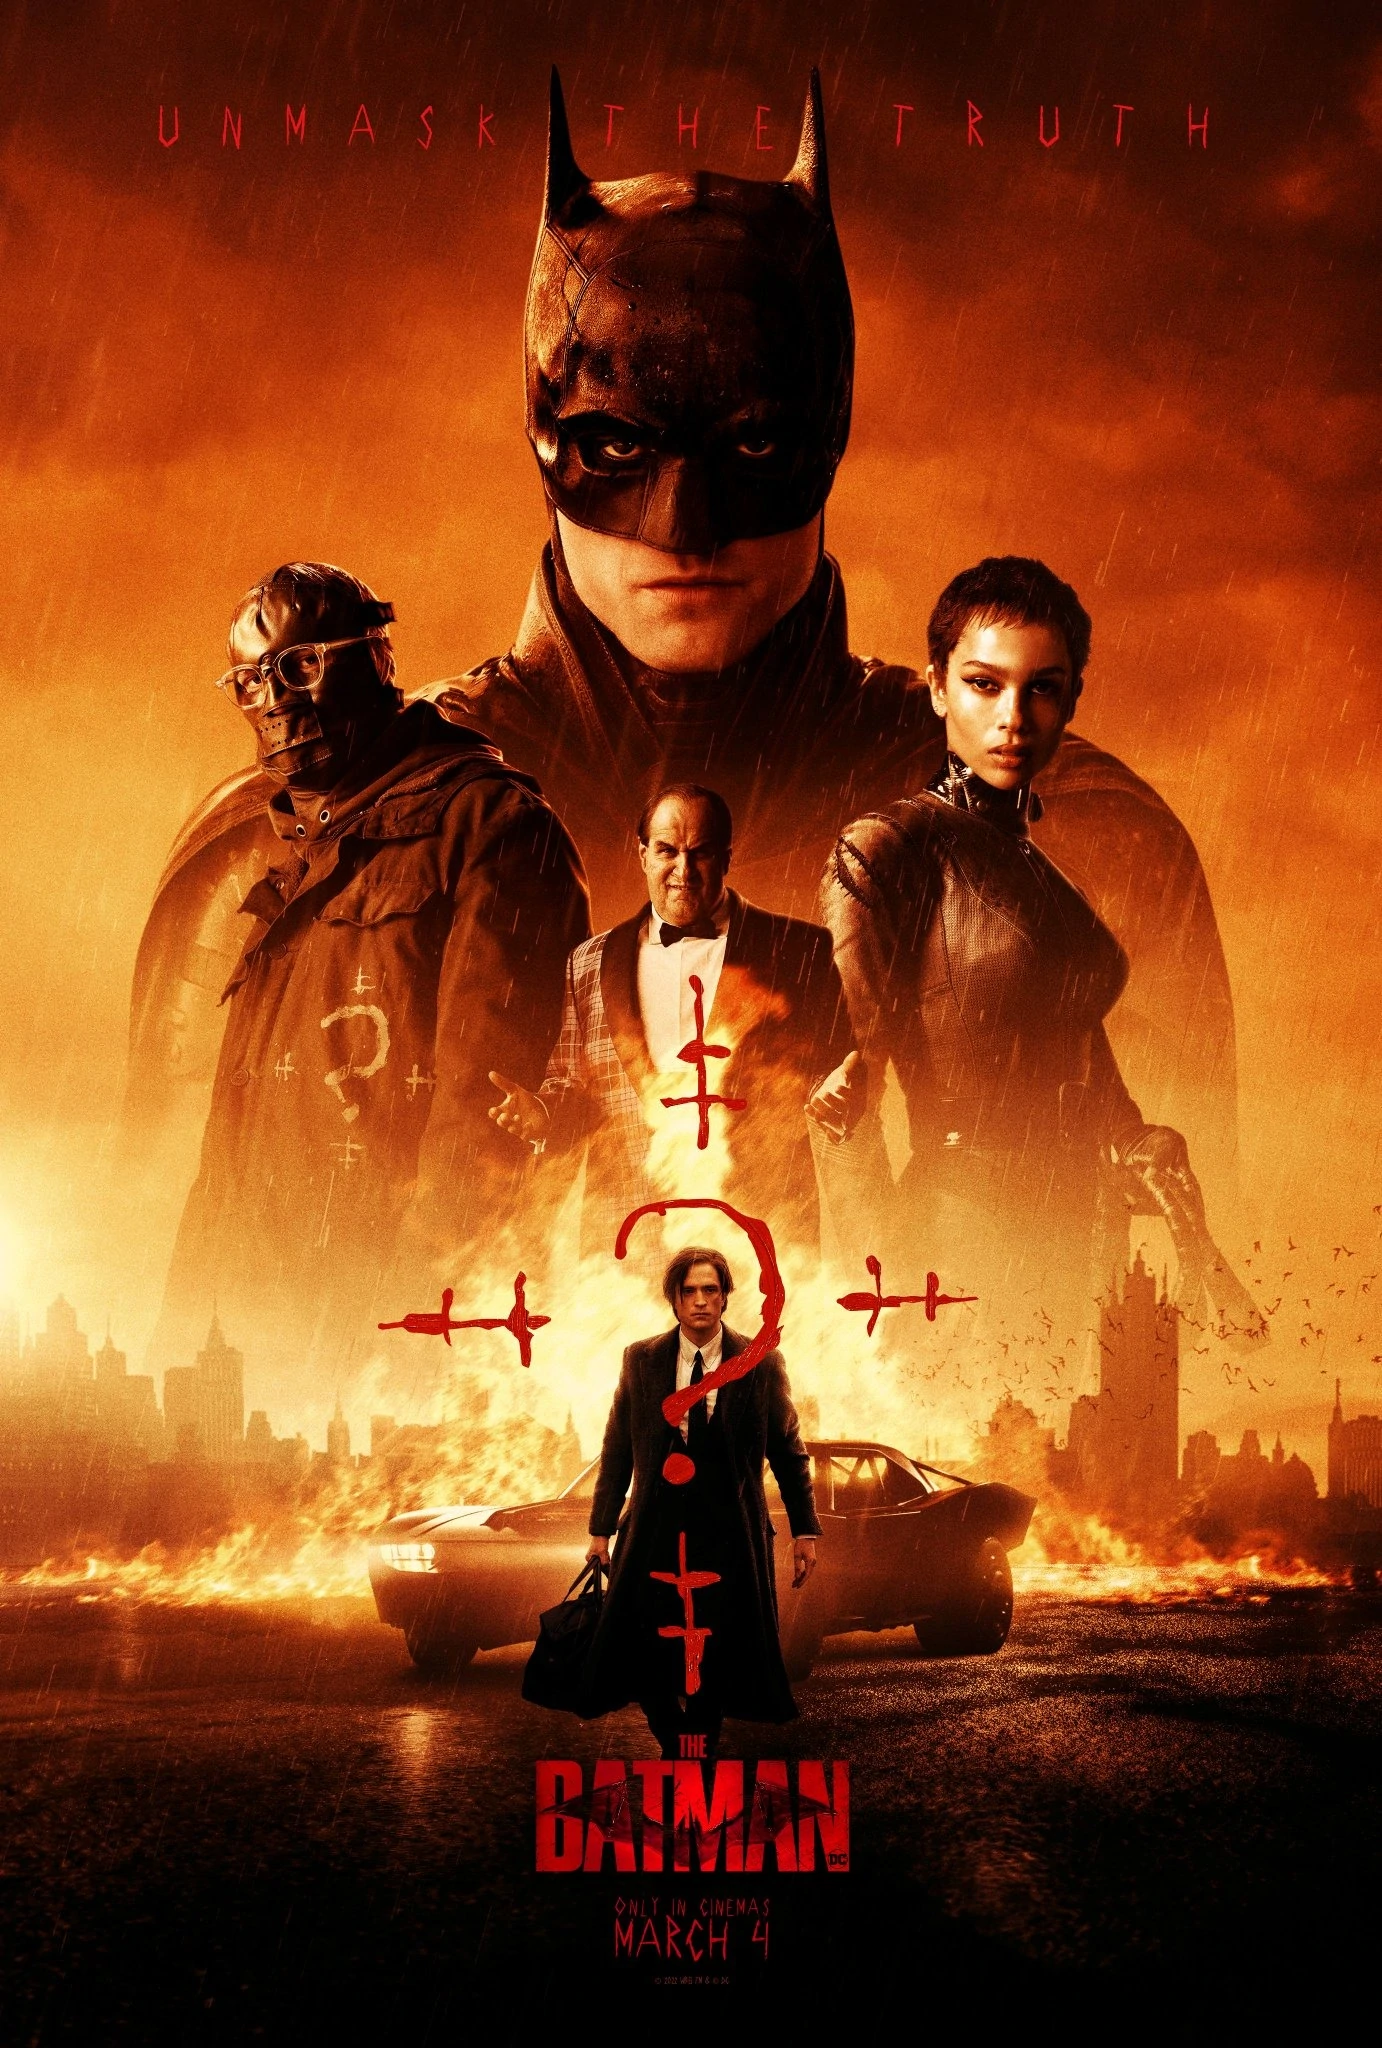 DC 漫畫電影《THE BATMAN》上映首週美國票房高達 10.4 億港幣